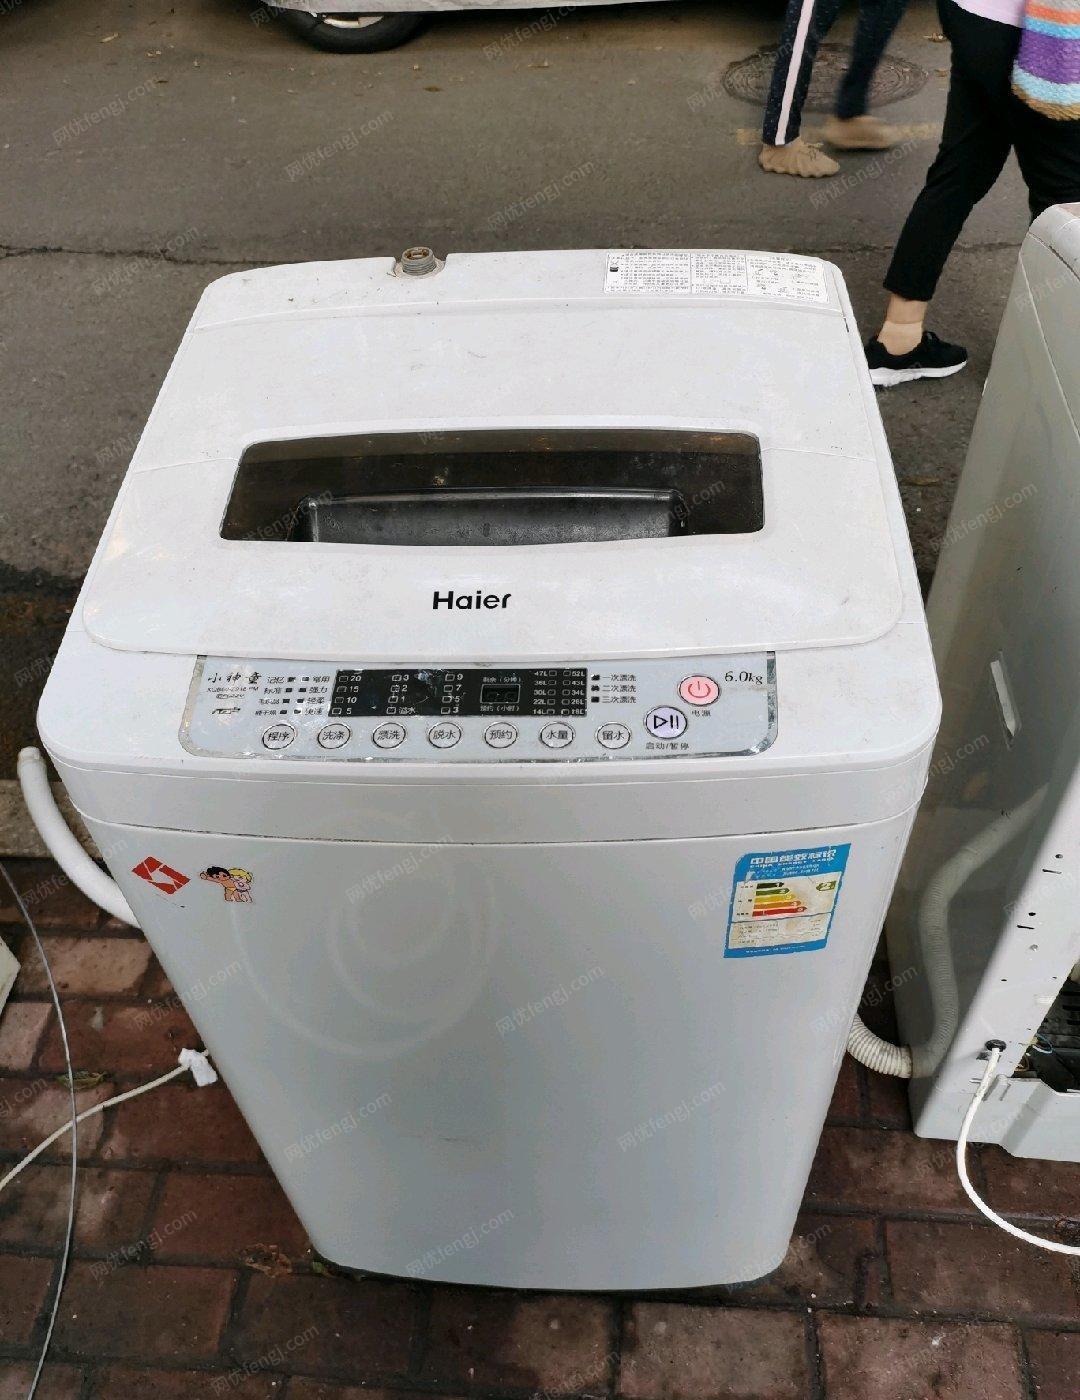 黑龙江哈尔滨海尔原装洗衣机低价出售